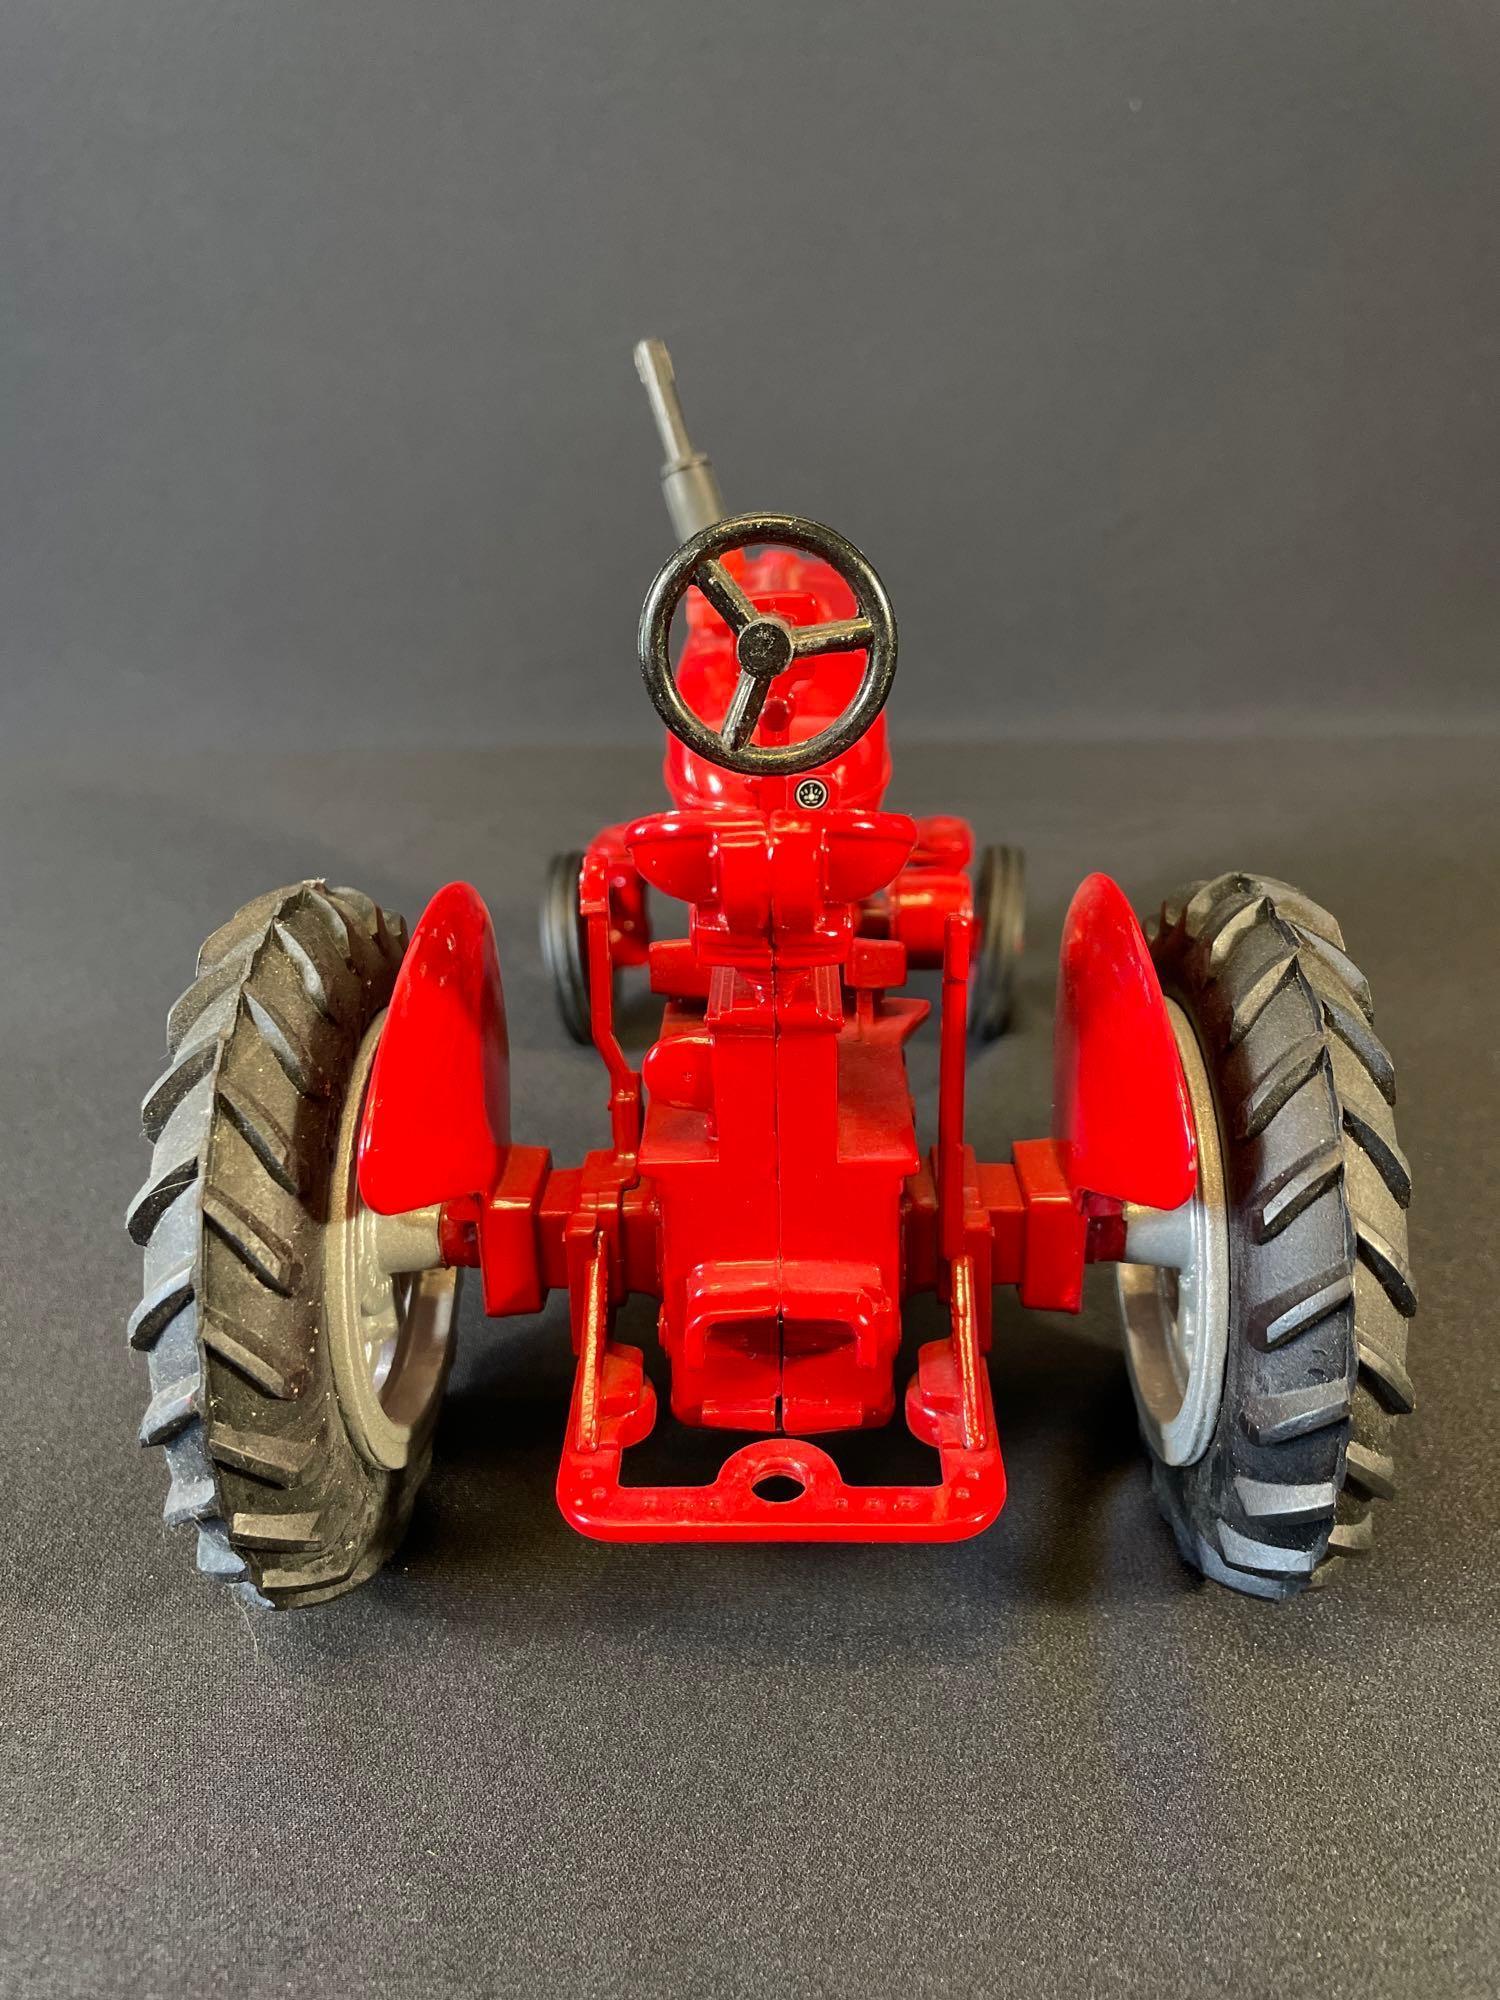 McCormick Farmall special edition 1152 & McCormick-Deering tractor spreader